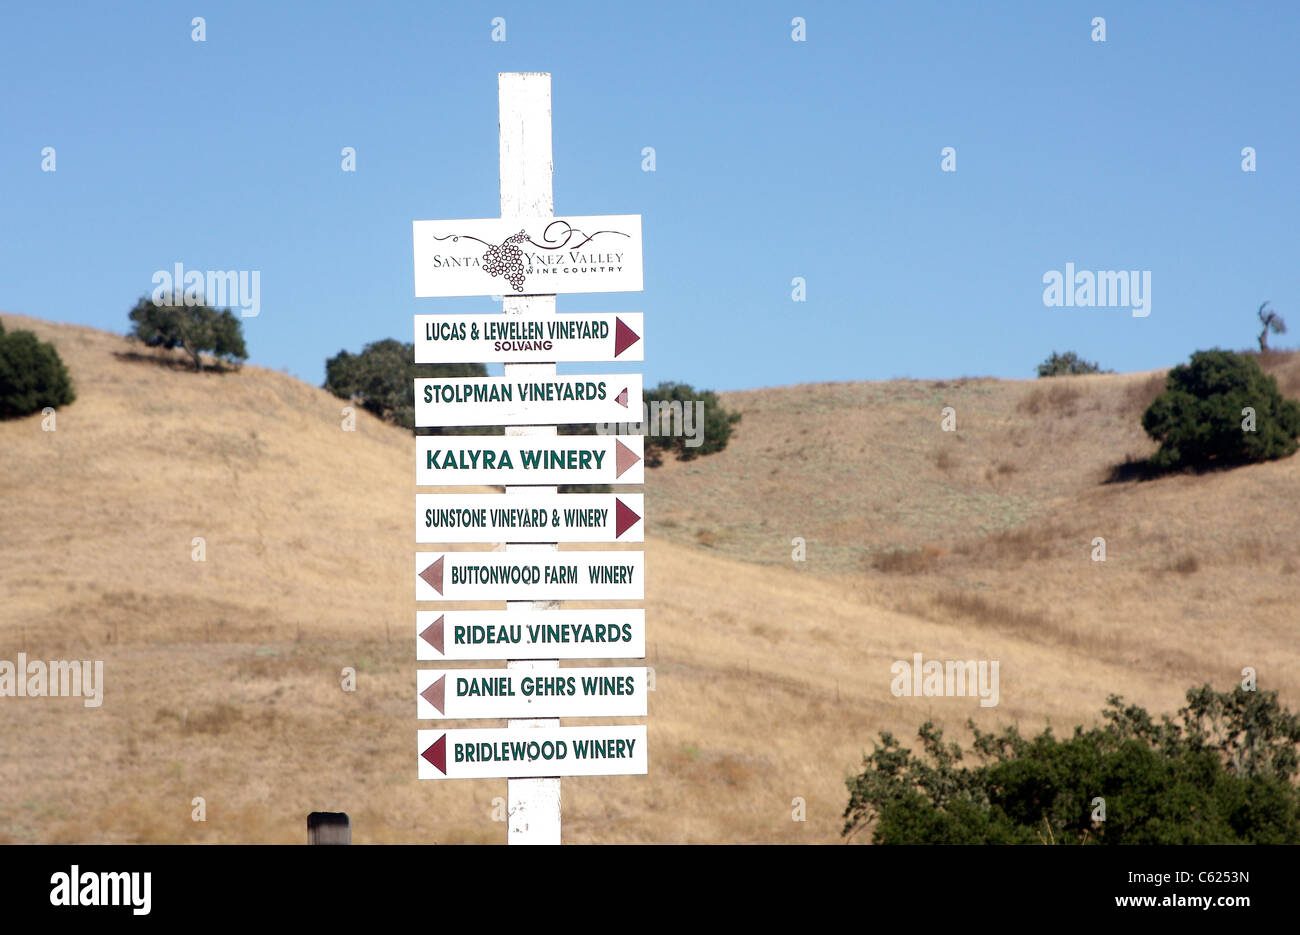 Zeichen mit Wegbeschreibungen zu verschiedenen Weinbergen rund um den Santa Ynez Valley, in der Nähe von Solvang, Kalifornien Stockfoto